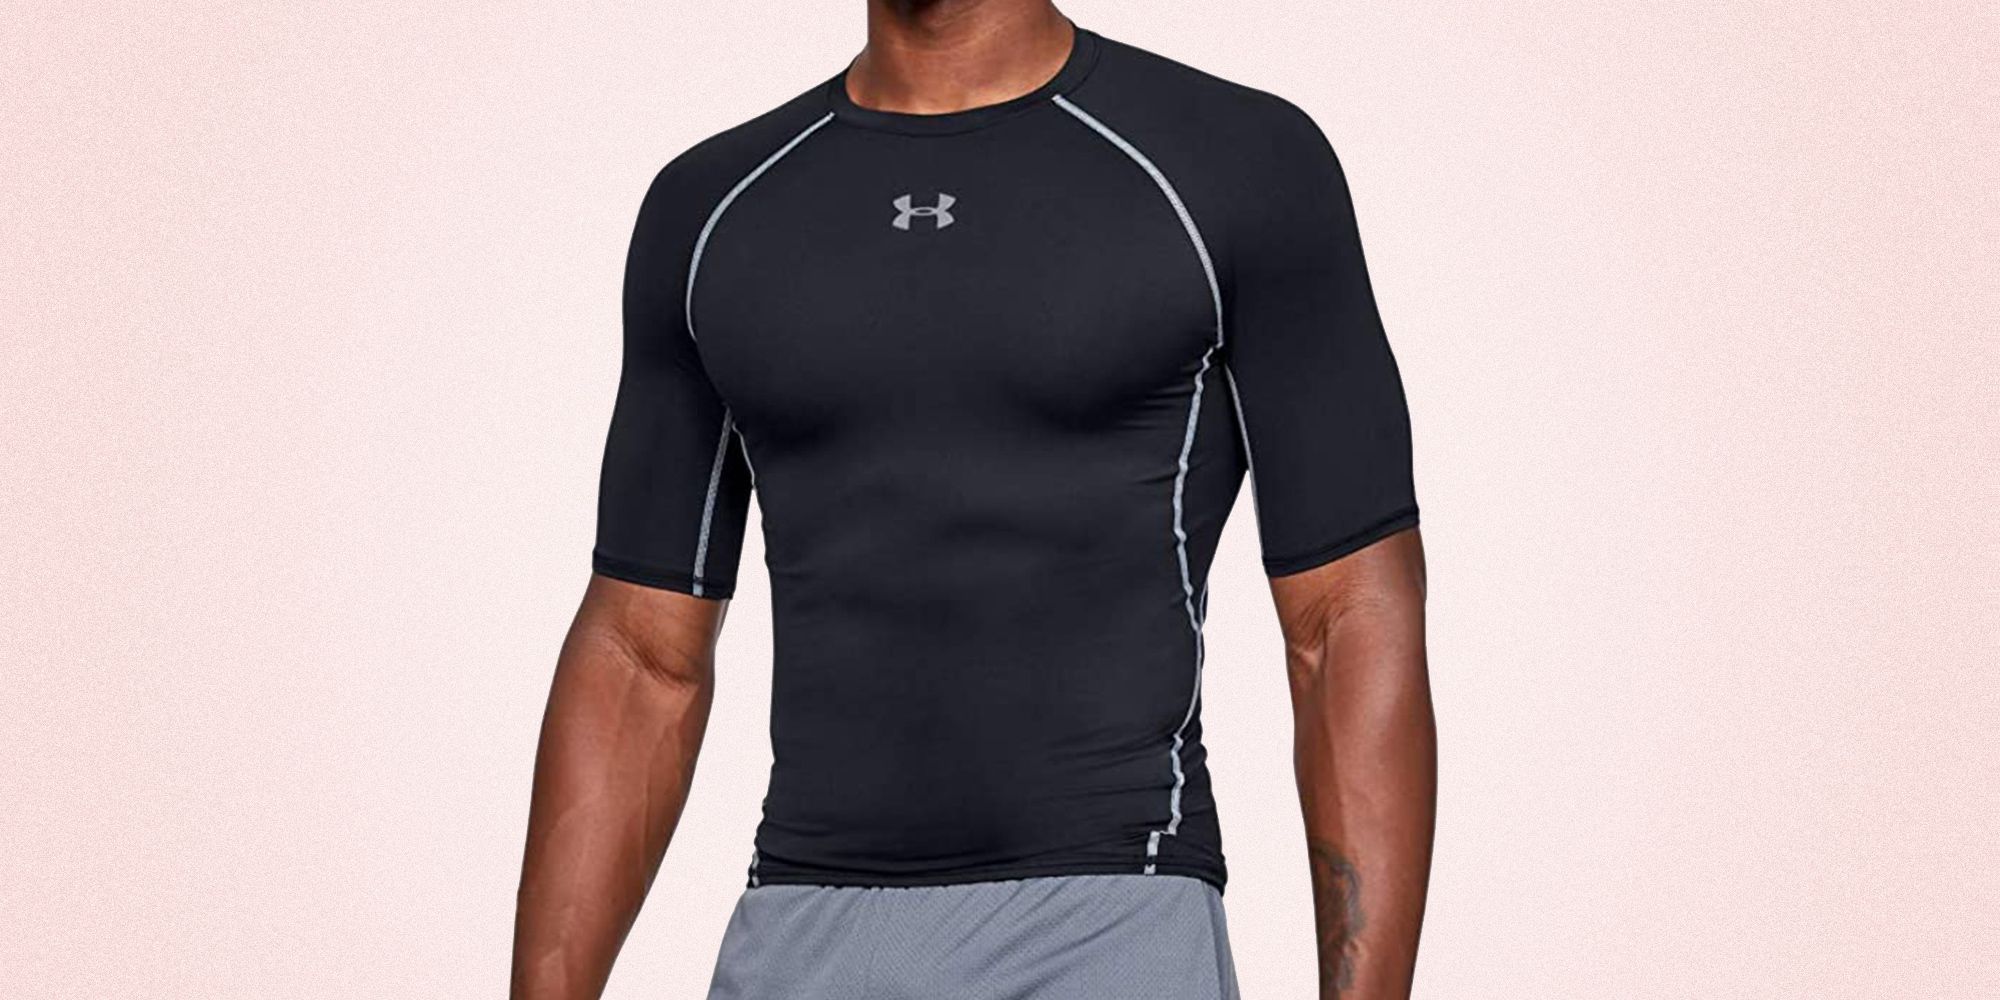 Men's Gym Top & Workout Shirts, KYDRA Activewear